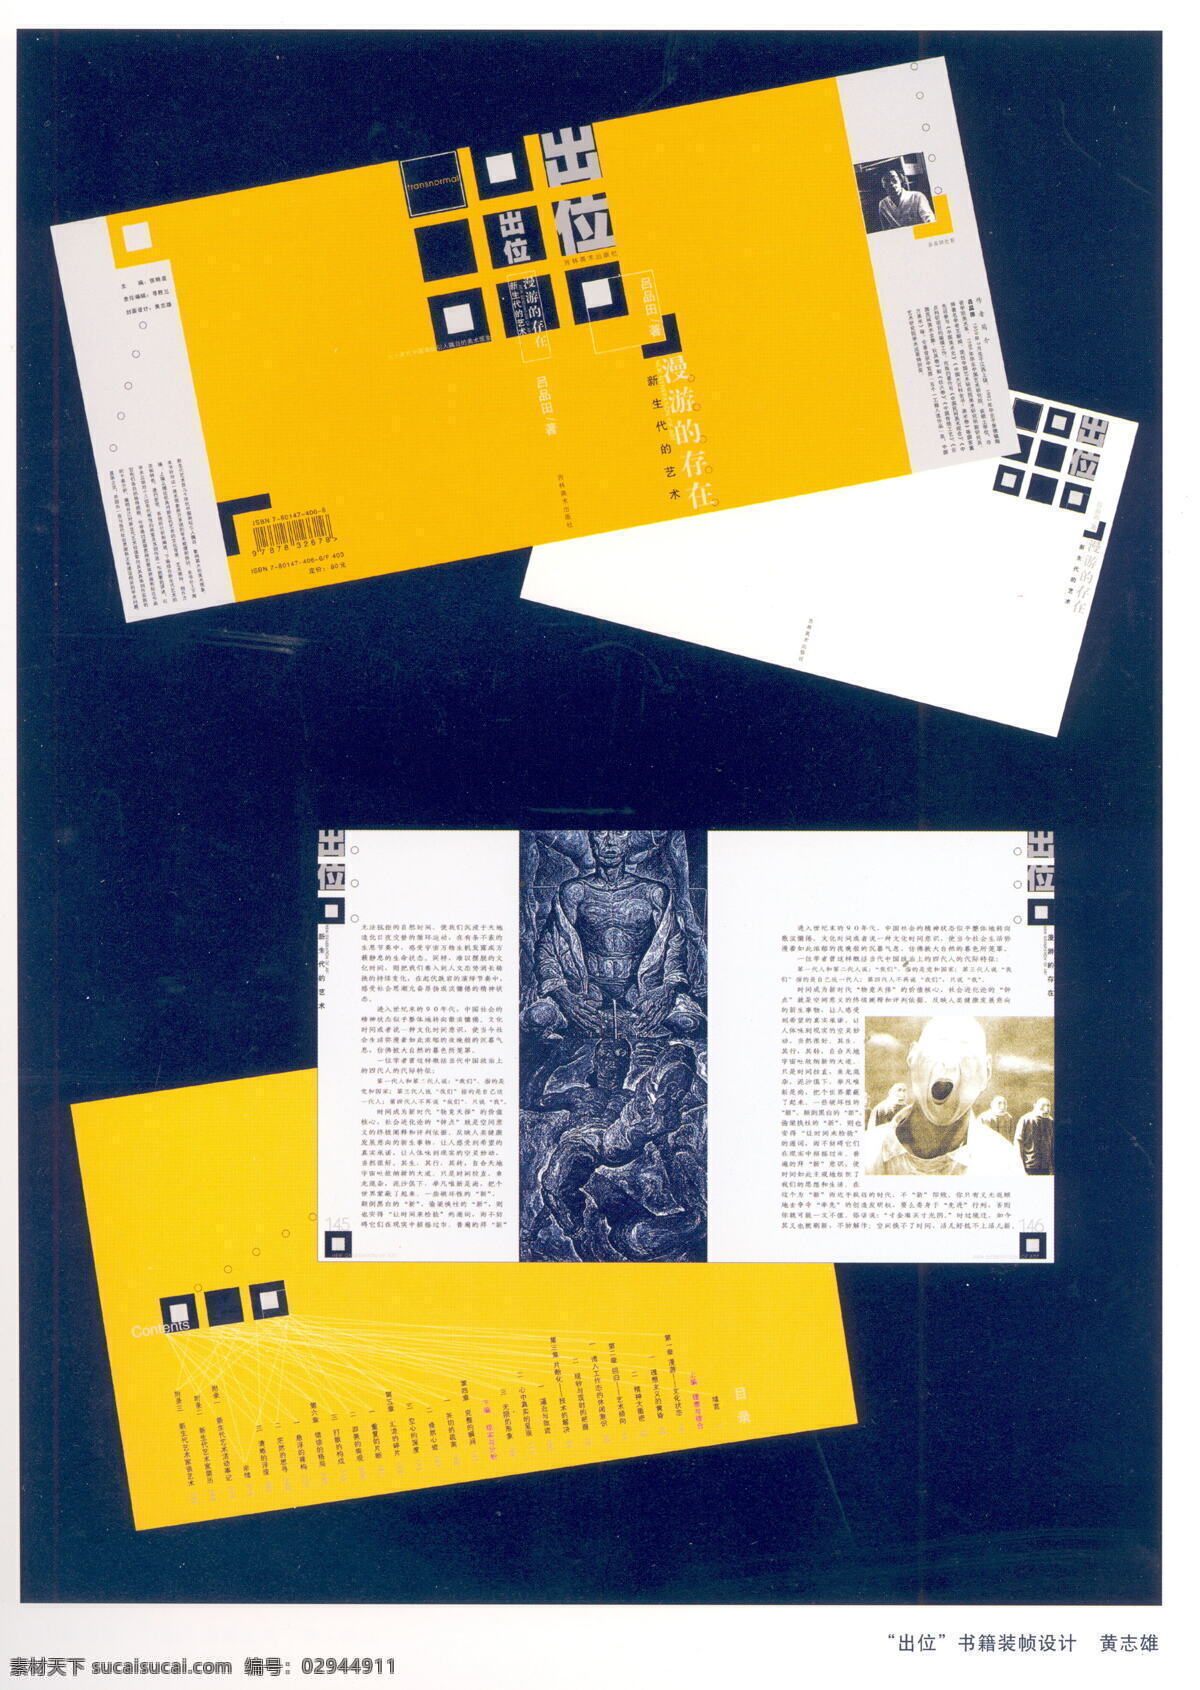 书装设计 装帧 设计素材 封面设计 书籍装帧 平面设计 白色